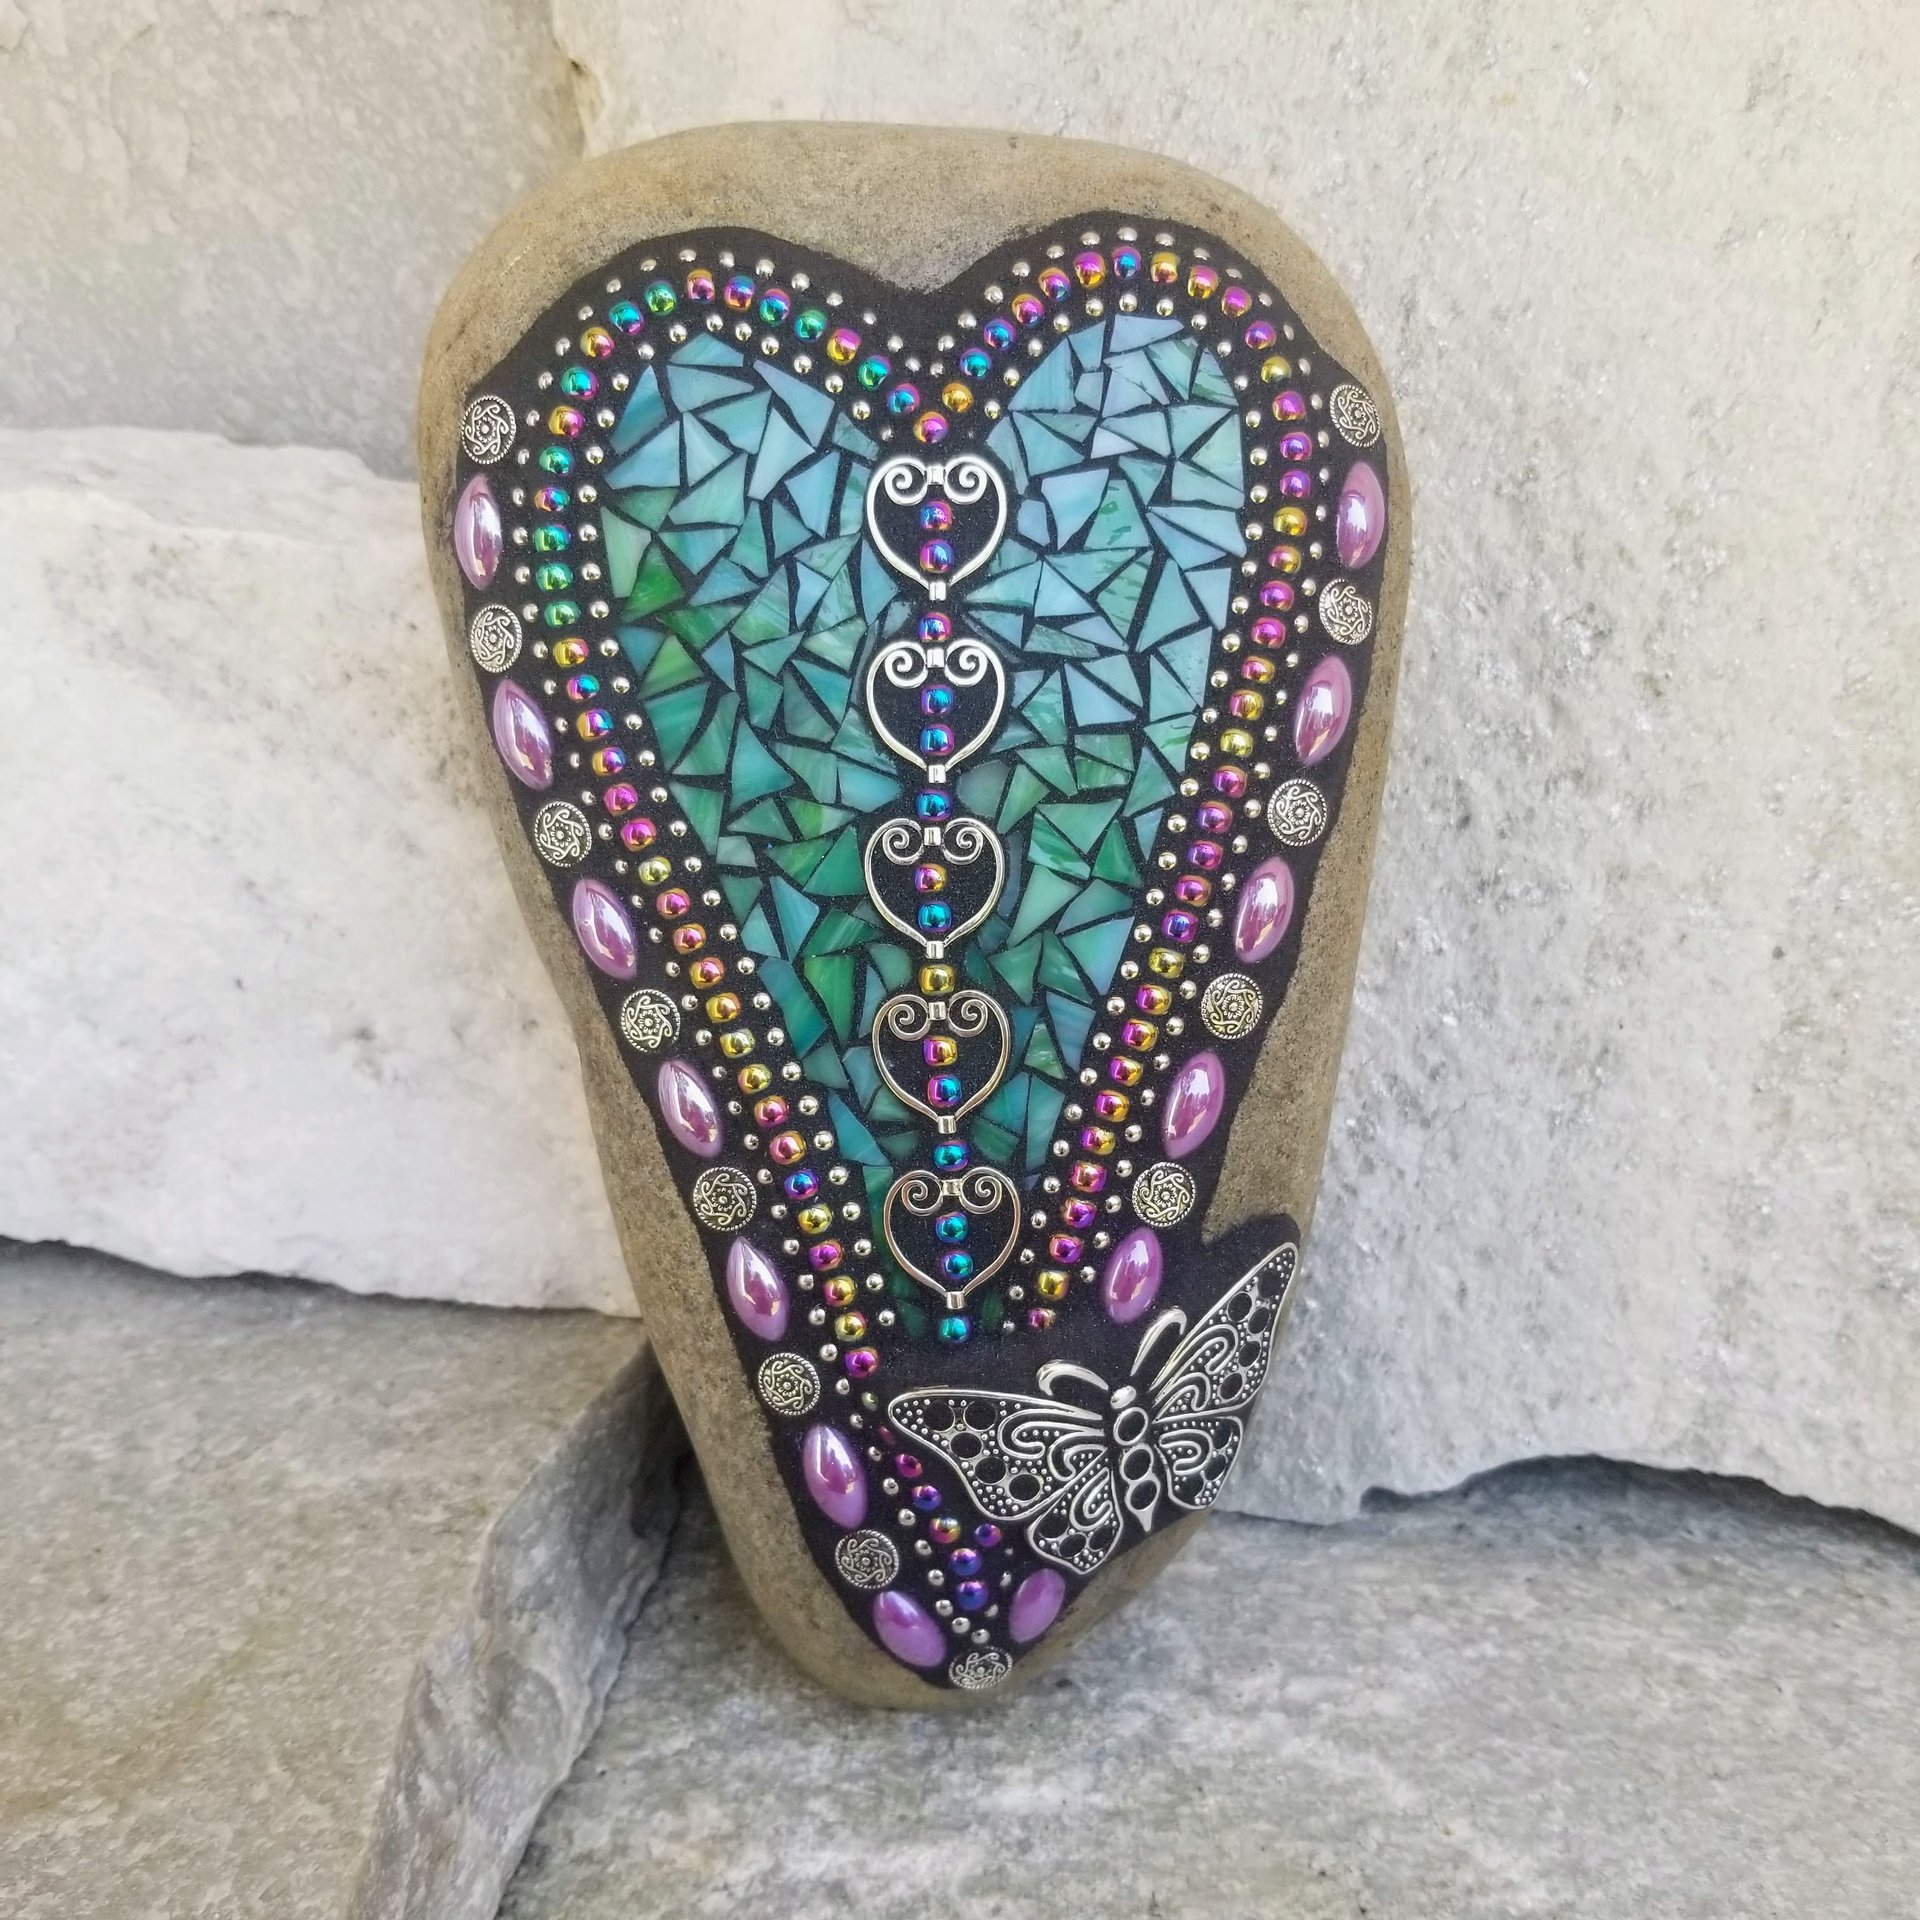 Teal Mosaic Heart Garden Stone, Butterfly